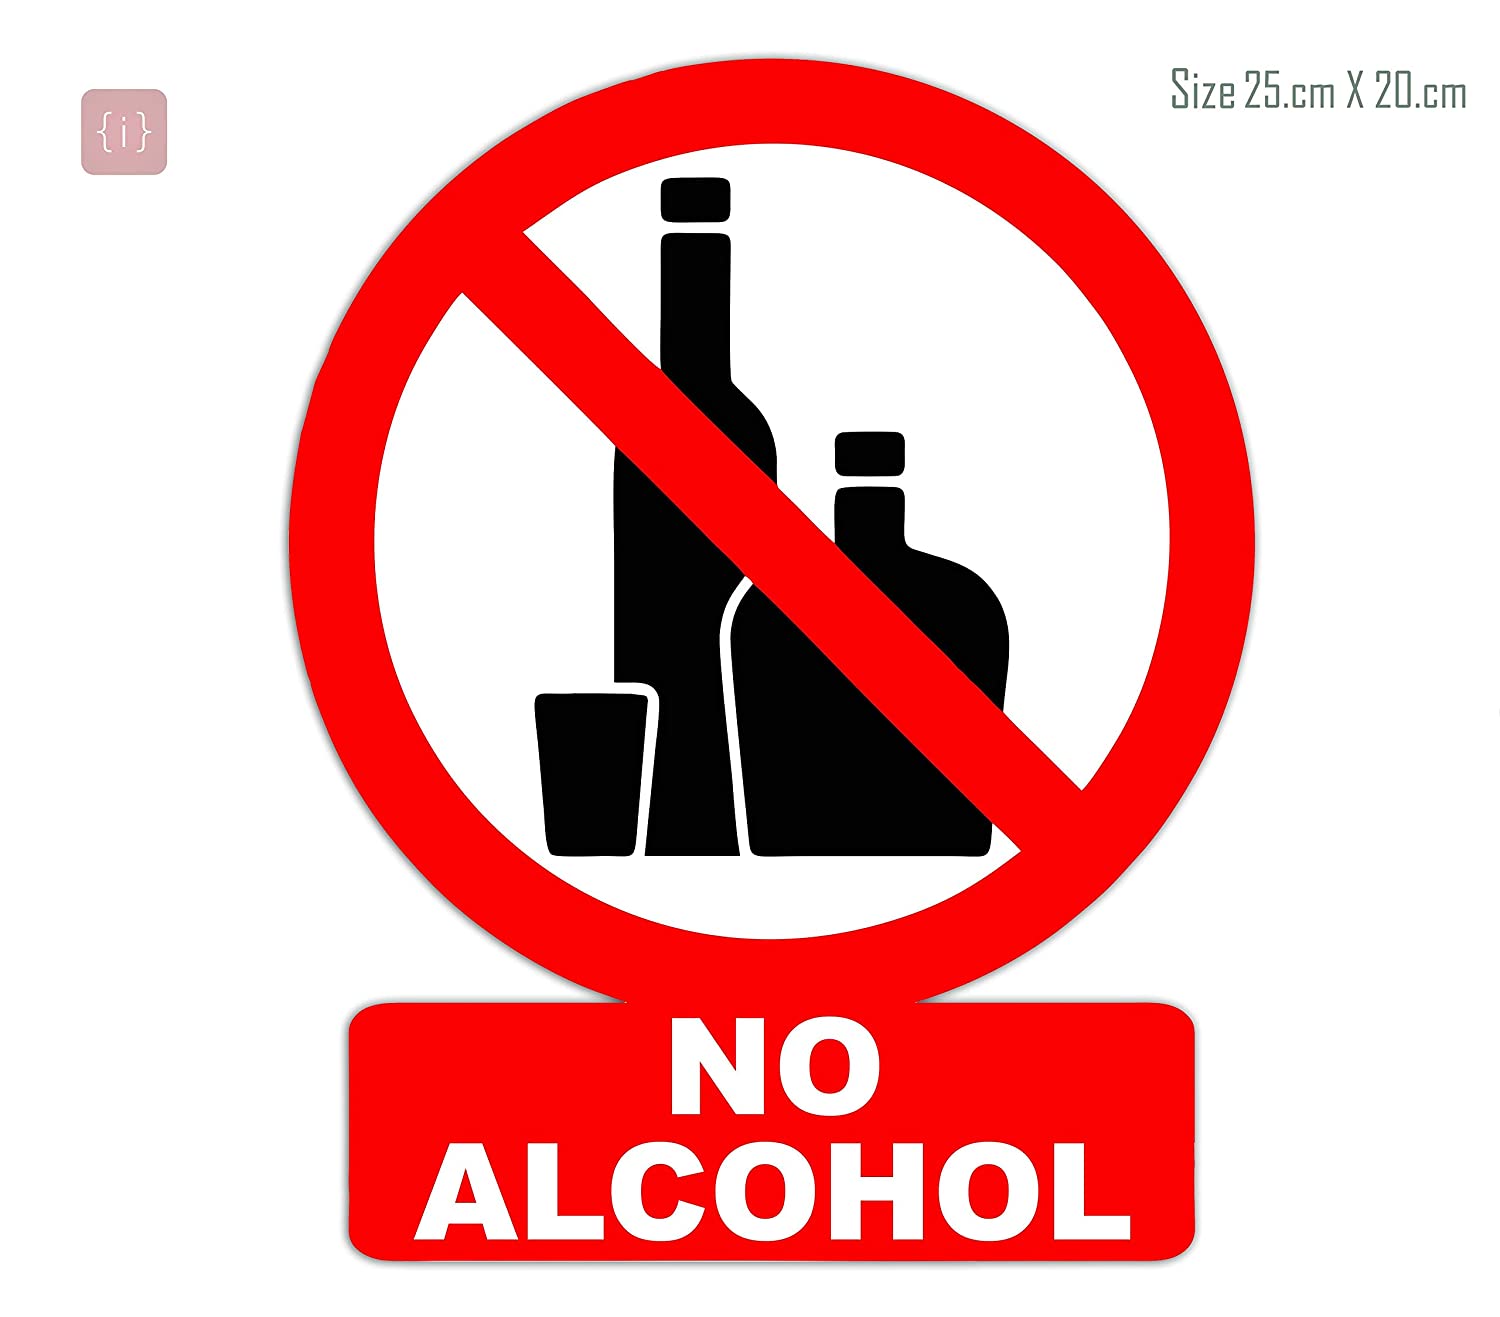 26 февраля в Таиланде будет запрещена продажа алкоголя